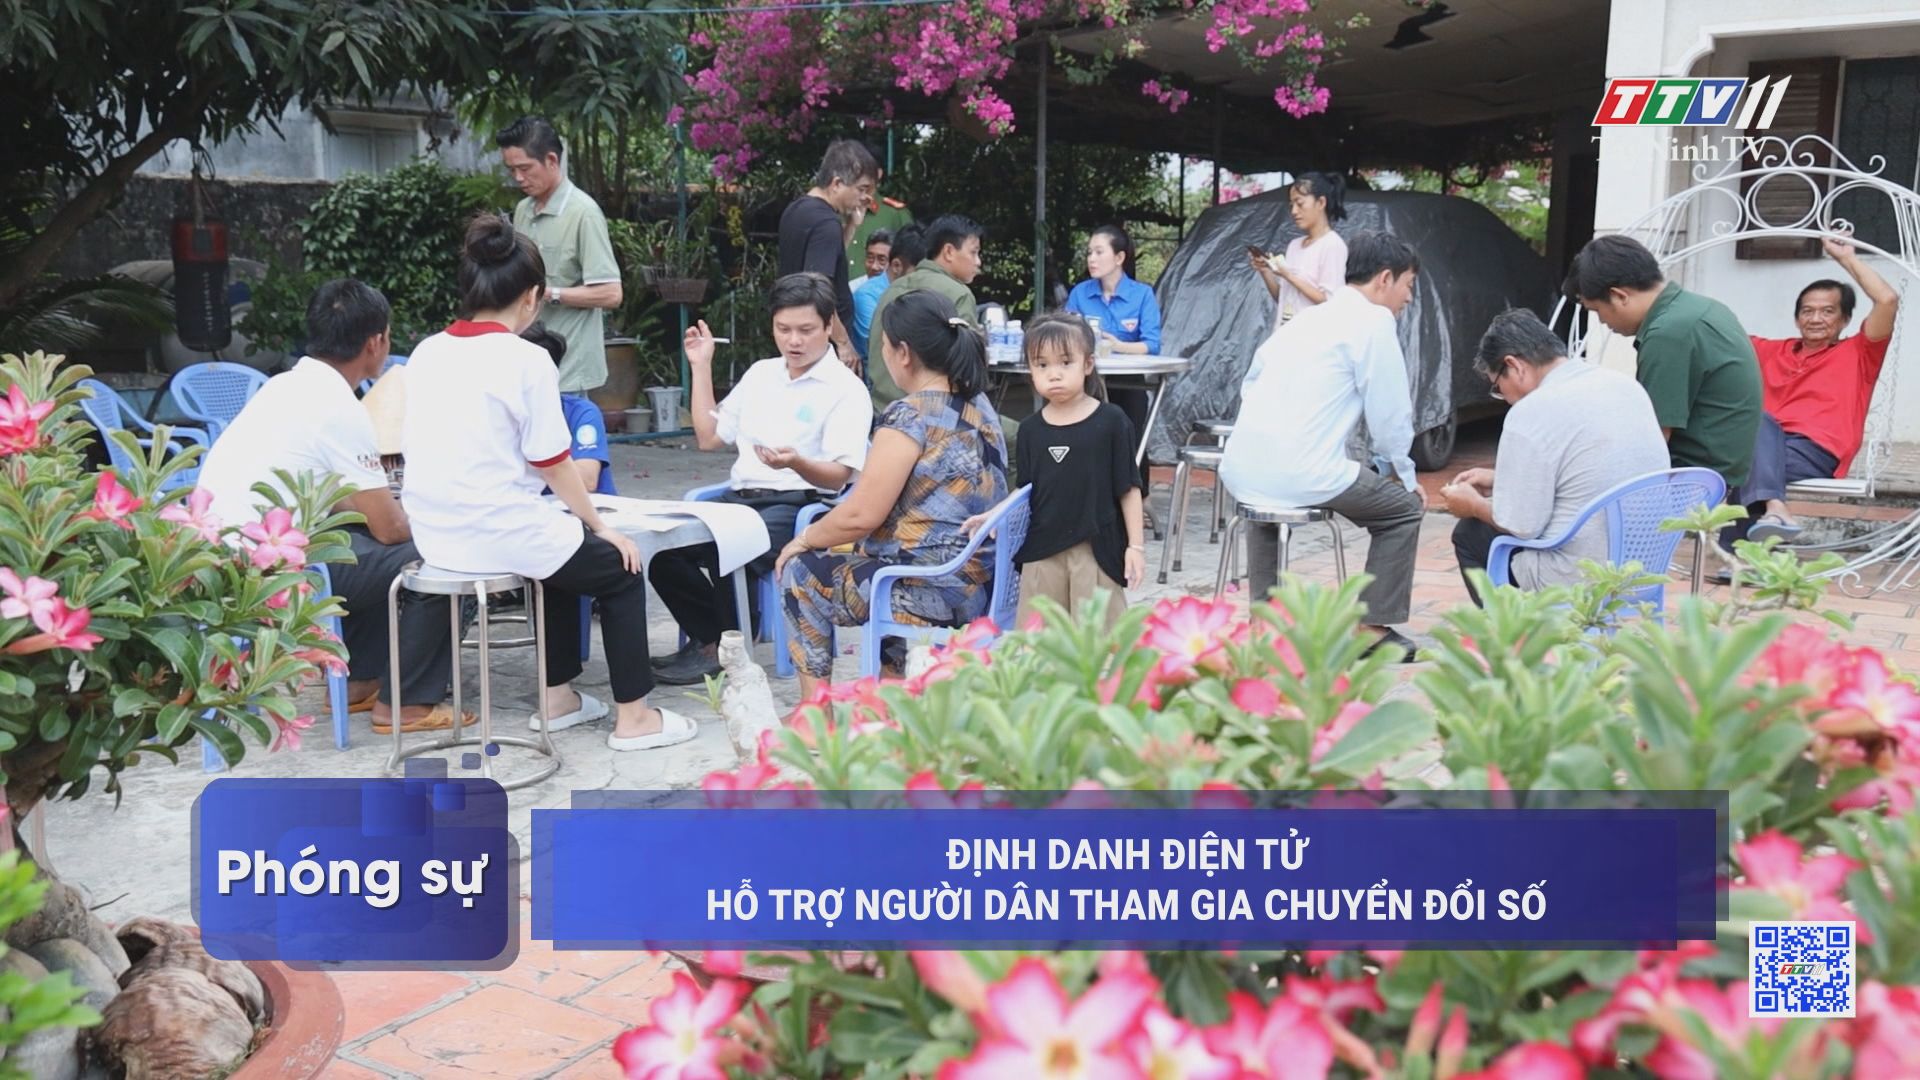 Định danh điện tử hỗ trợ người dân tham gia chuyển đổi số | TayNinhTV